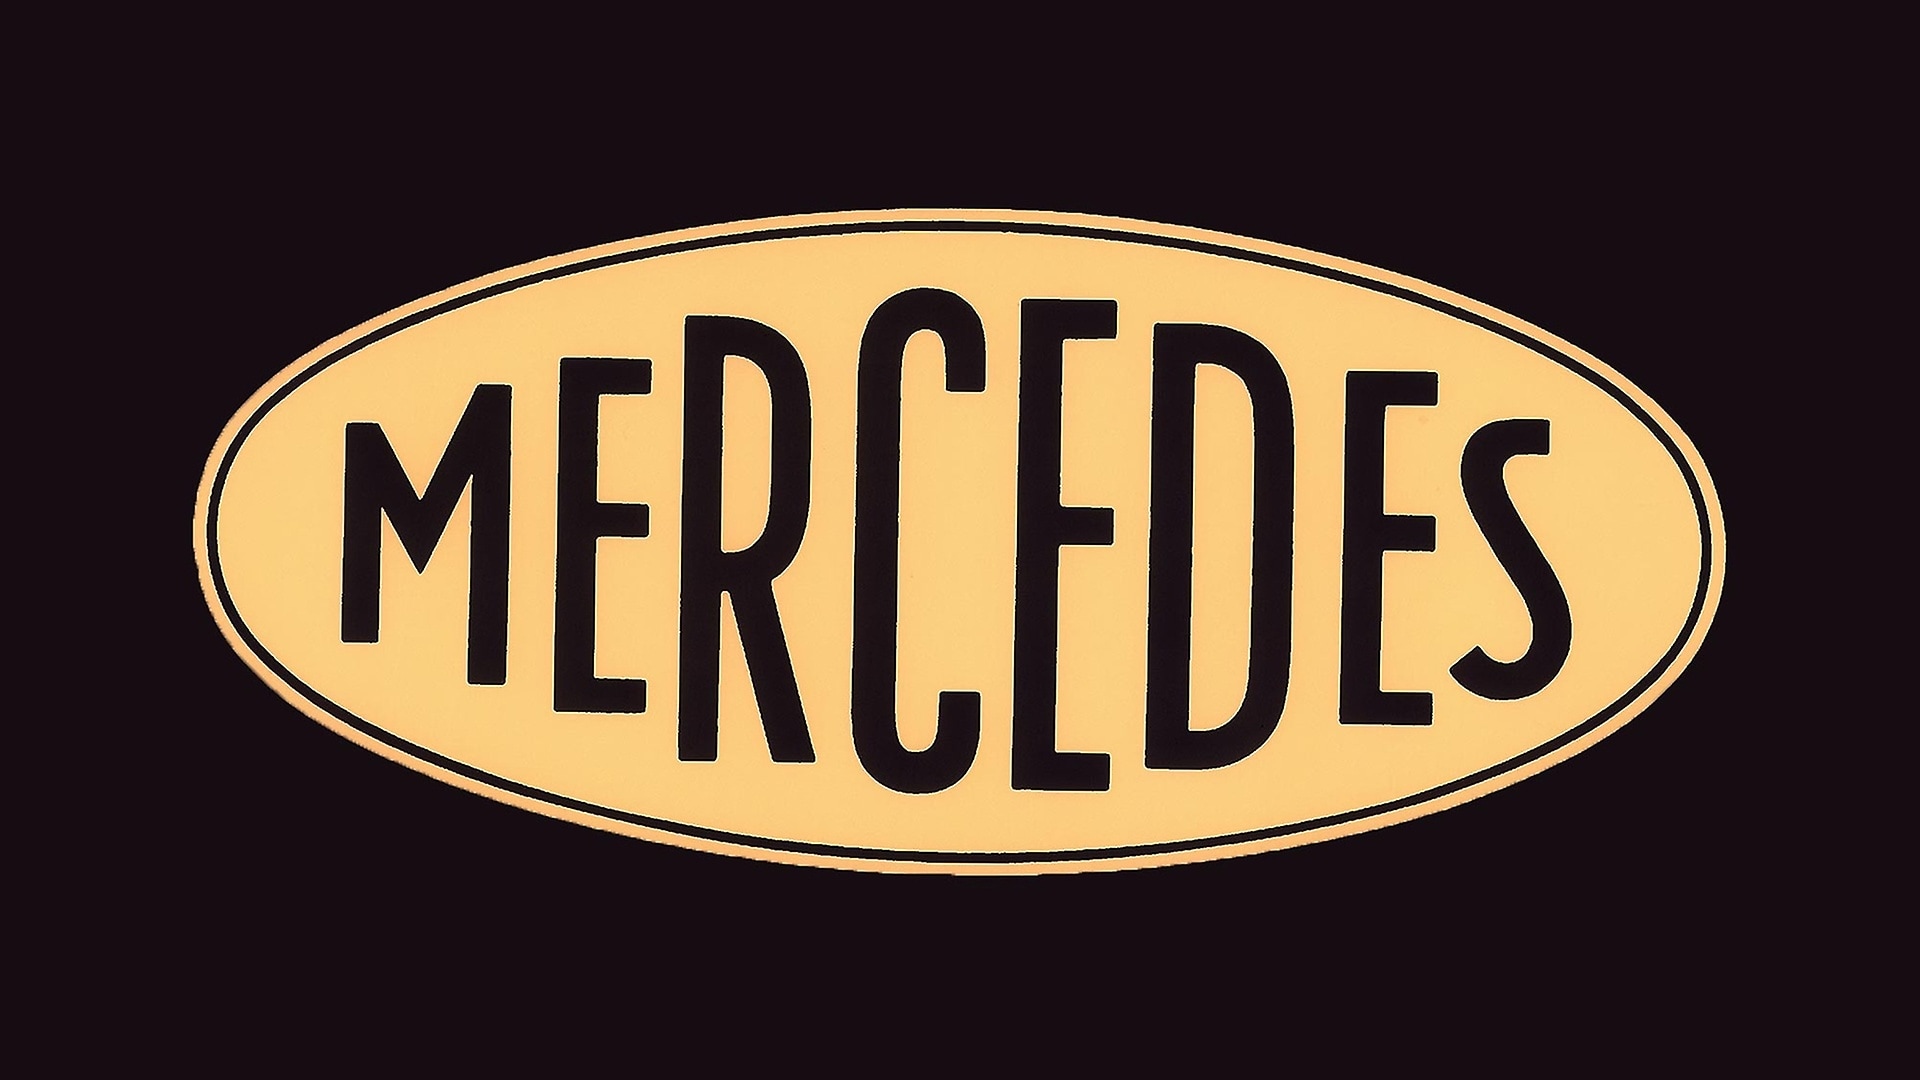 The "Mercedes" trademark (Daimler-Motoren-Gesellschaft) was registered on September 23, 1902.